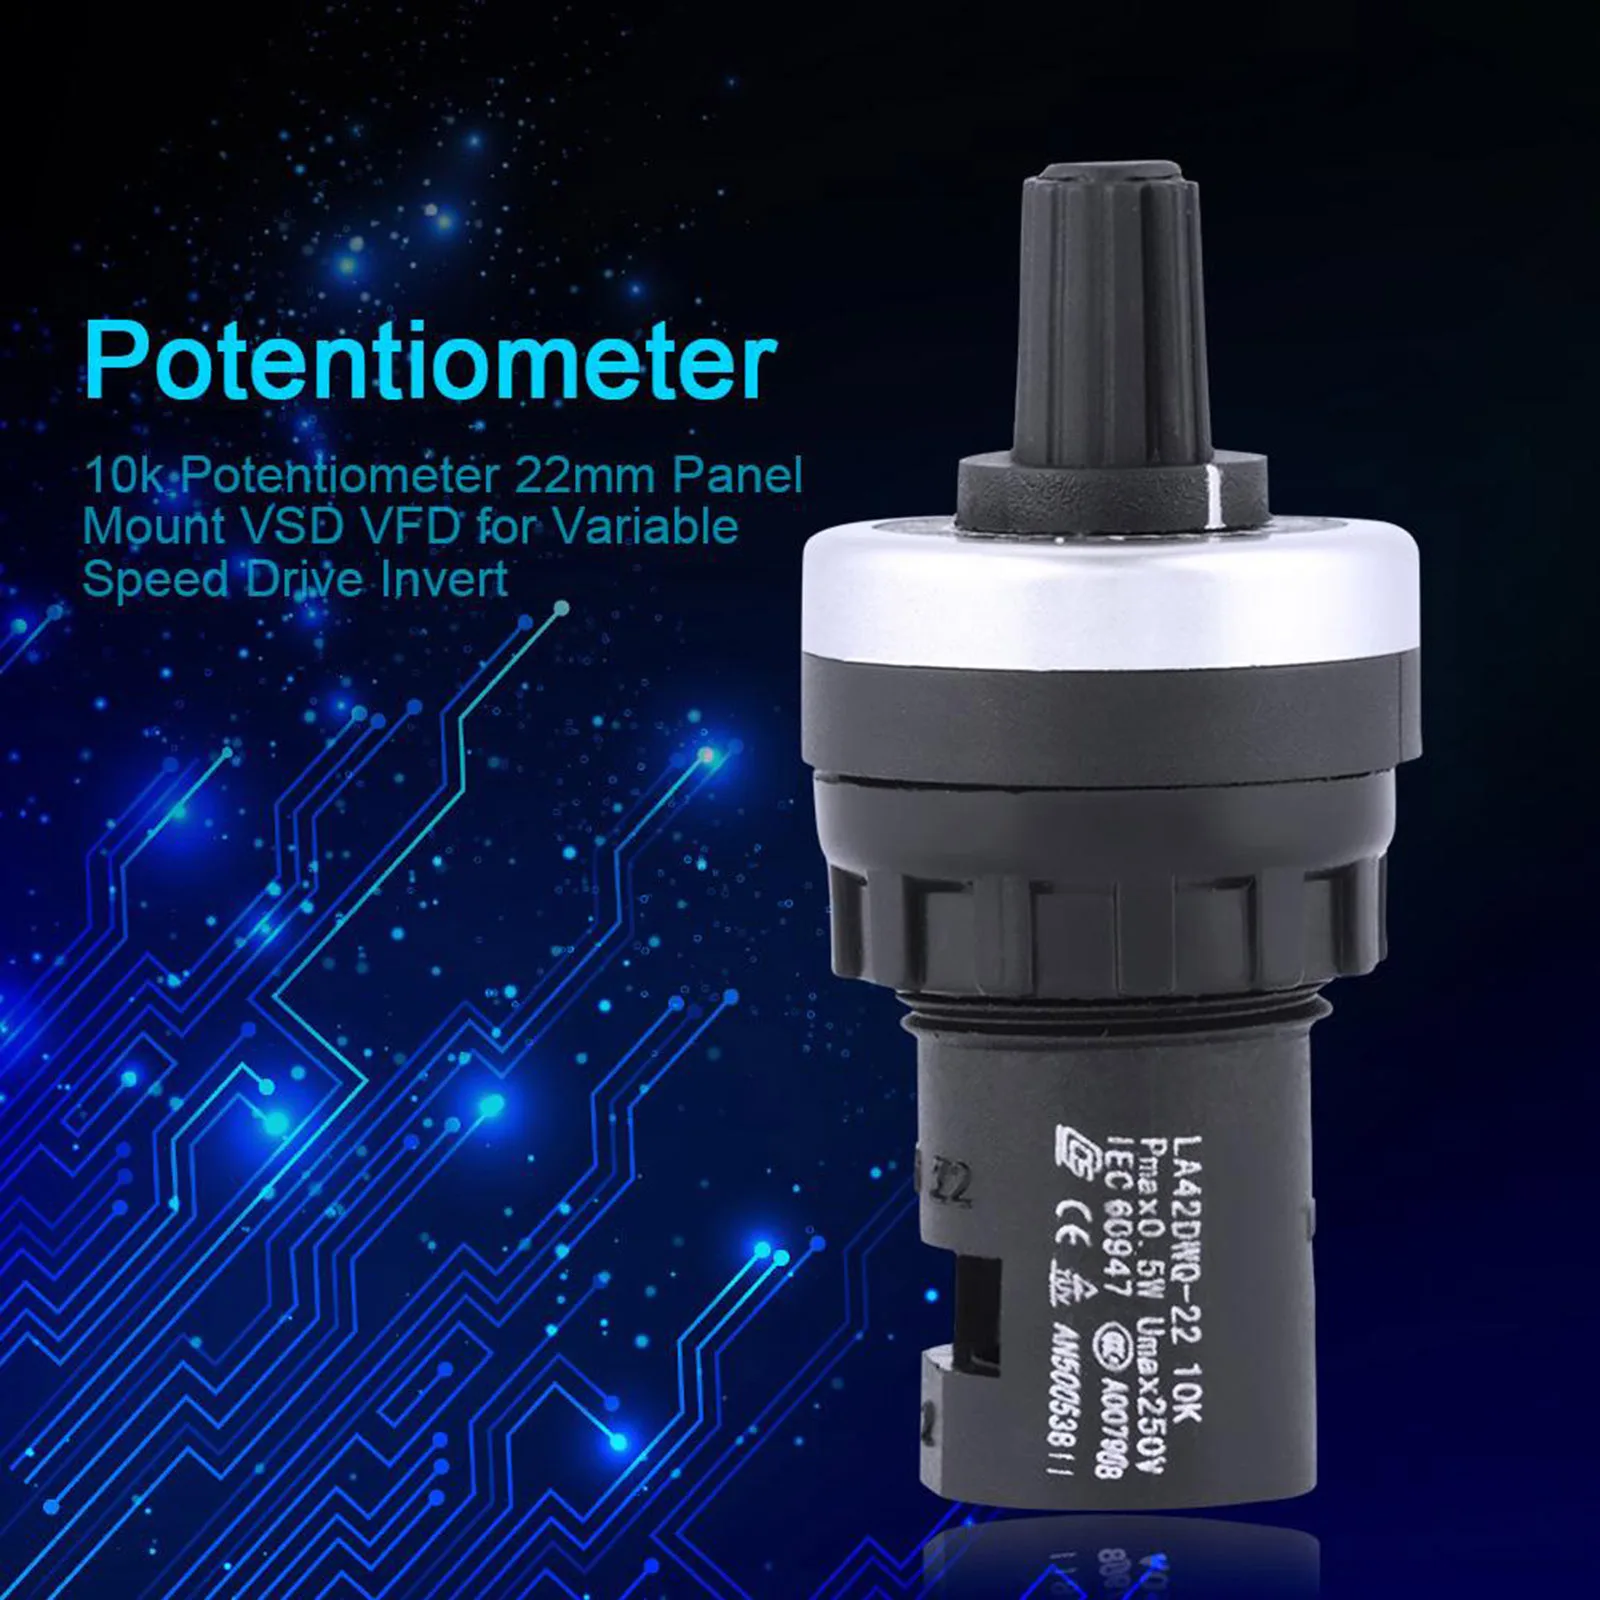 VSD for variable speed drive invert K85 10k potentiometer 22mm panel mount VFD 